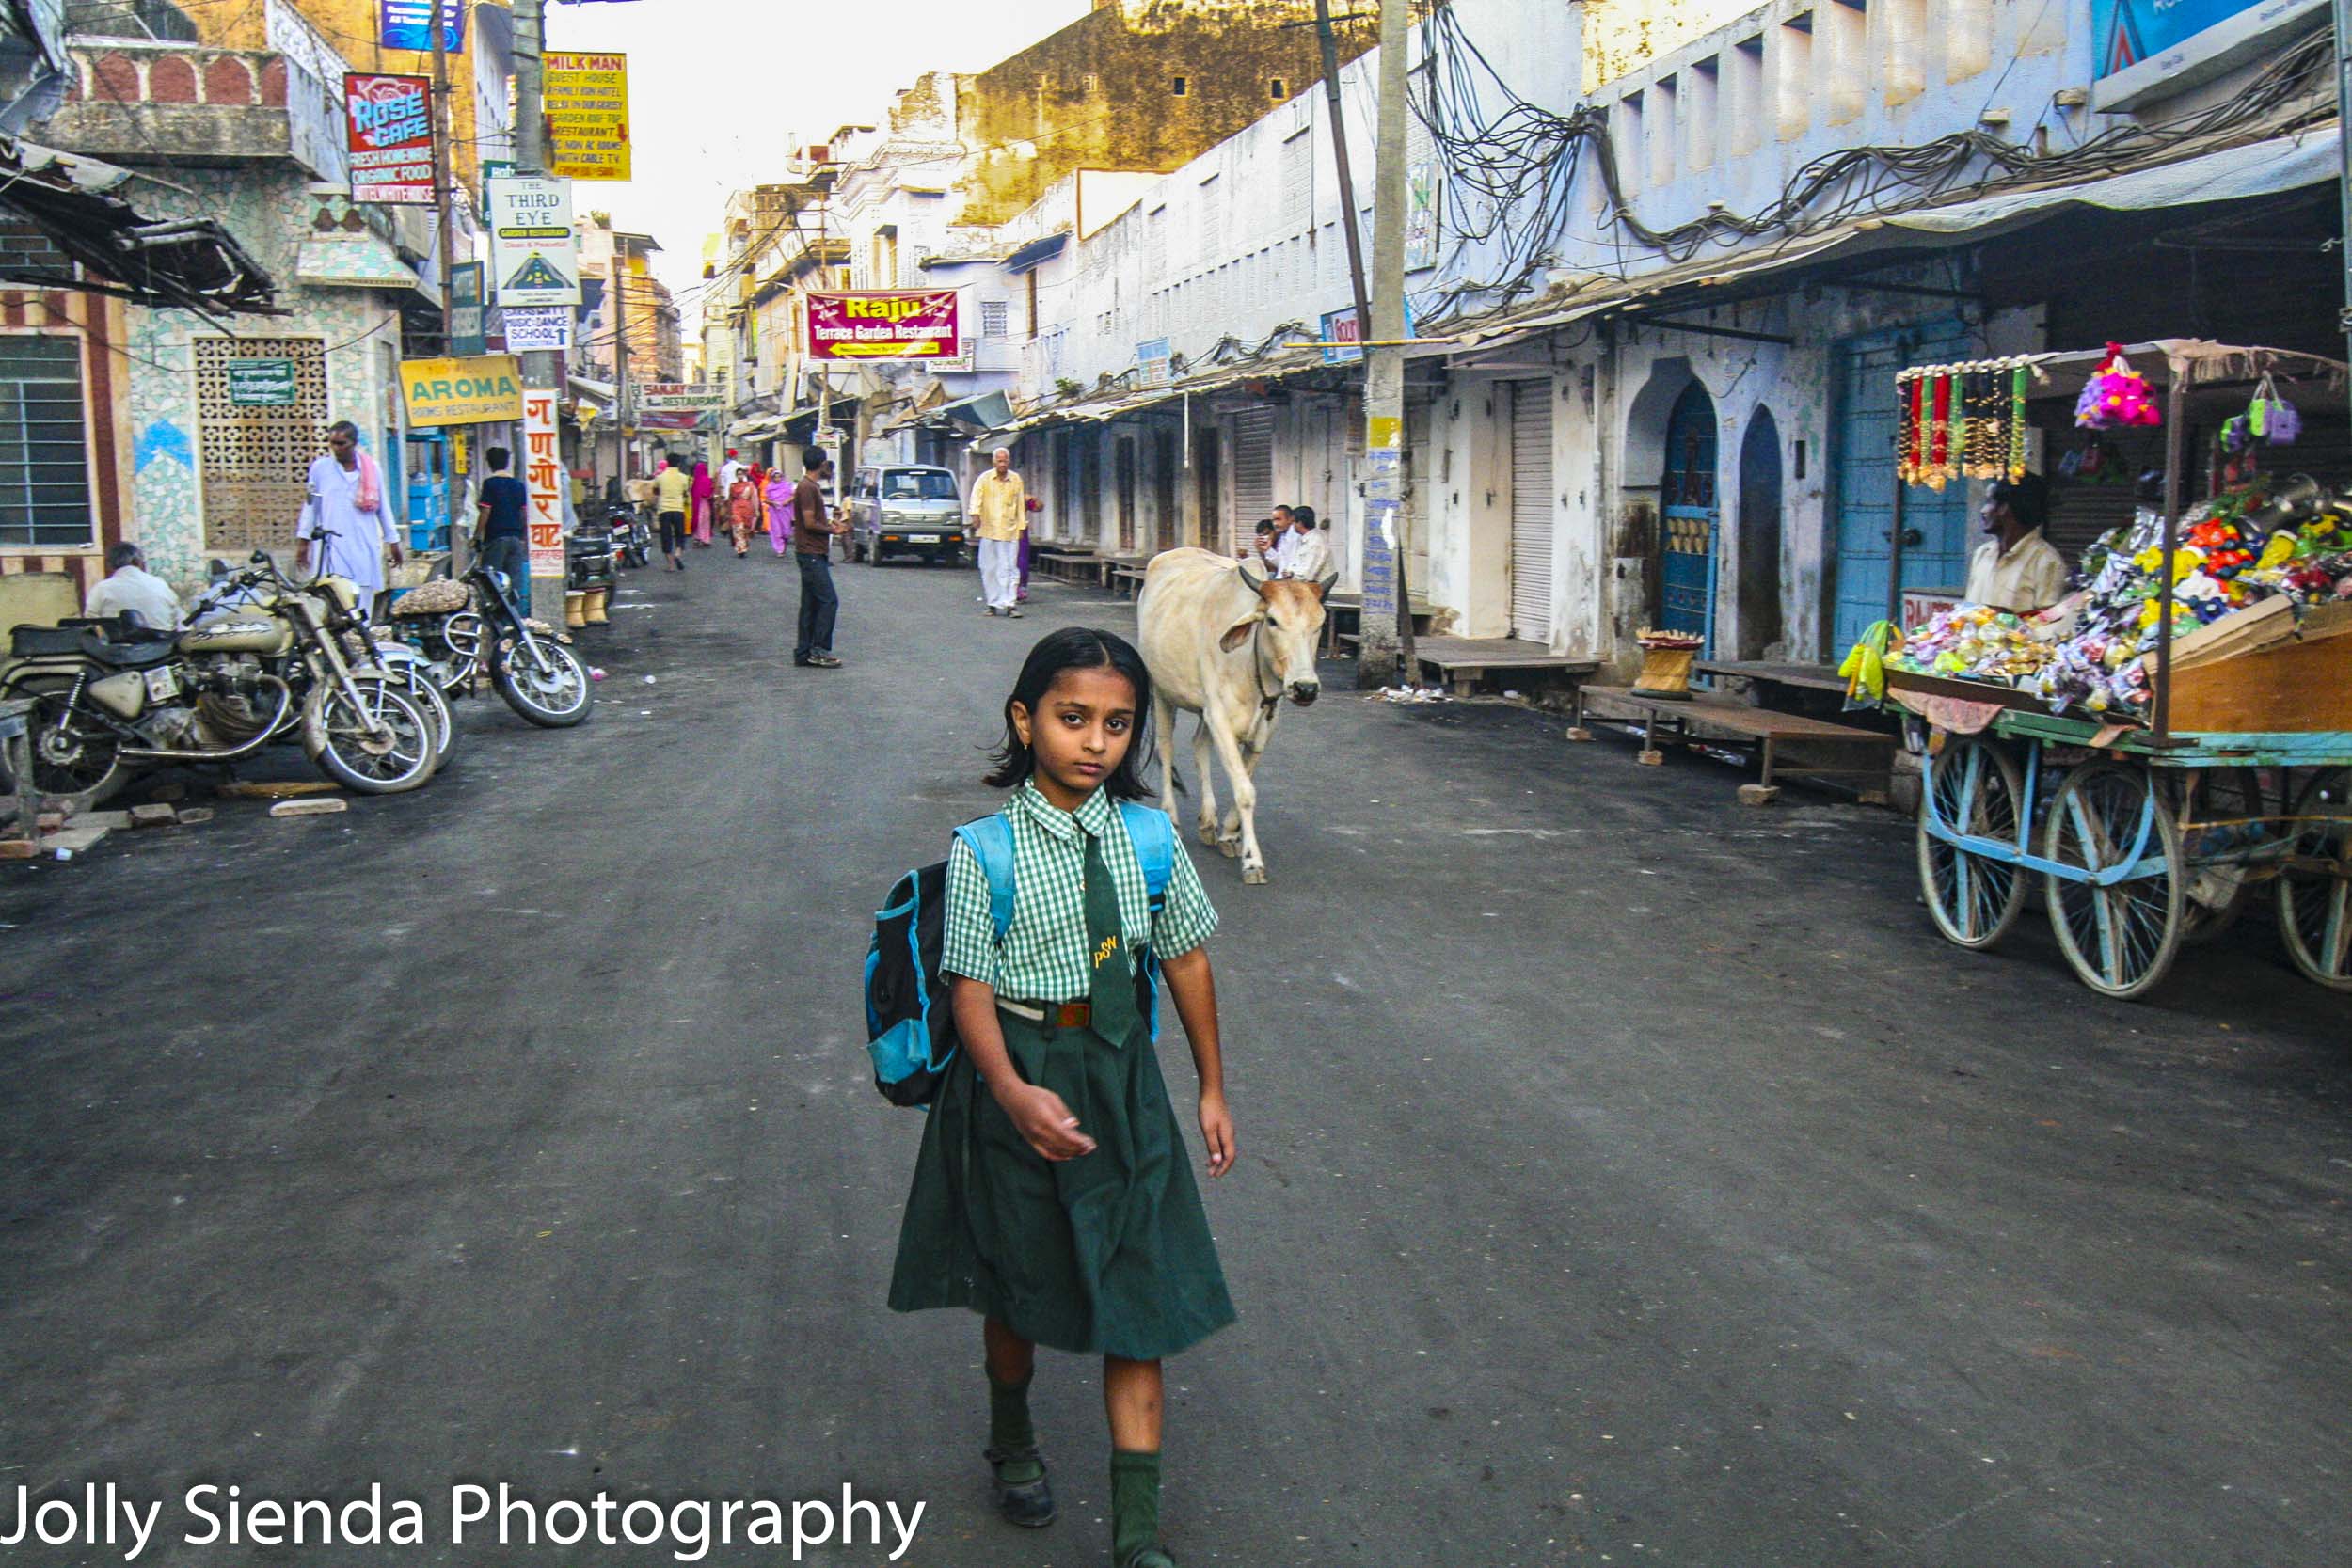 School girl in uniform walks down market street with a horned co